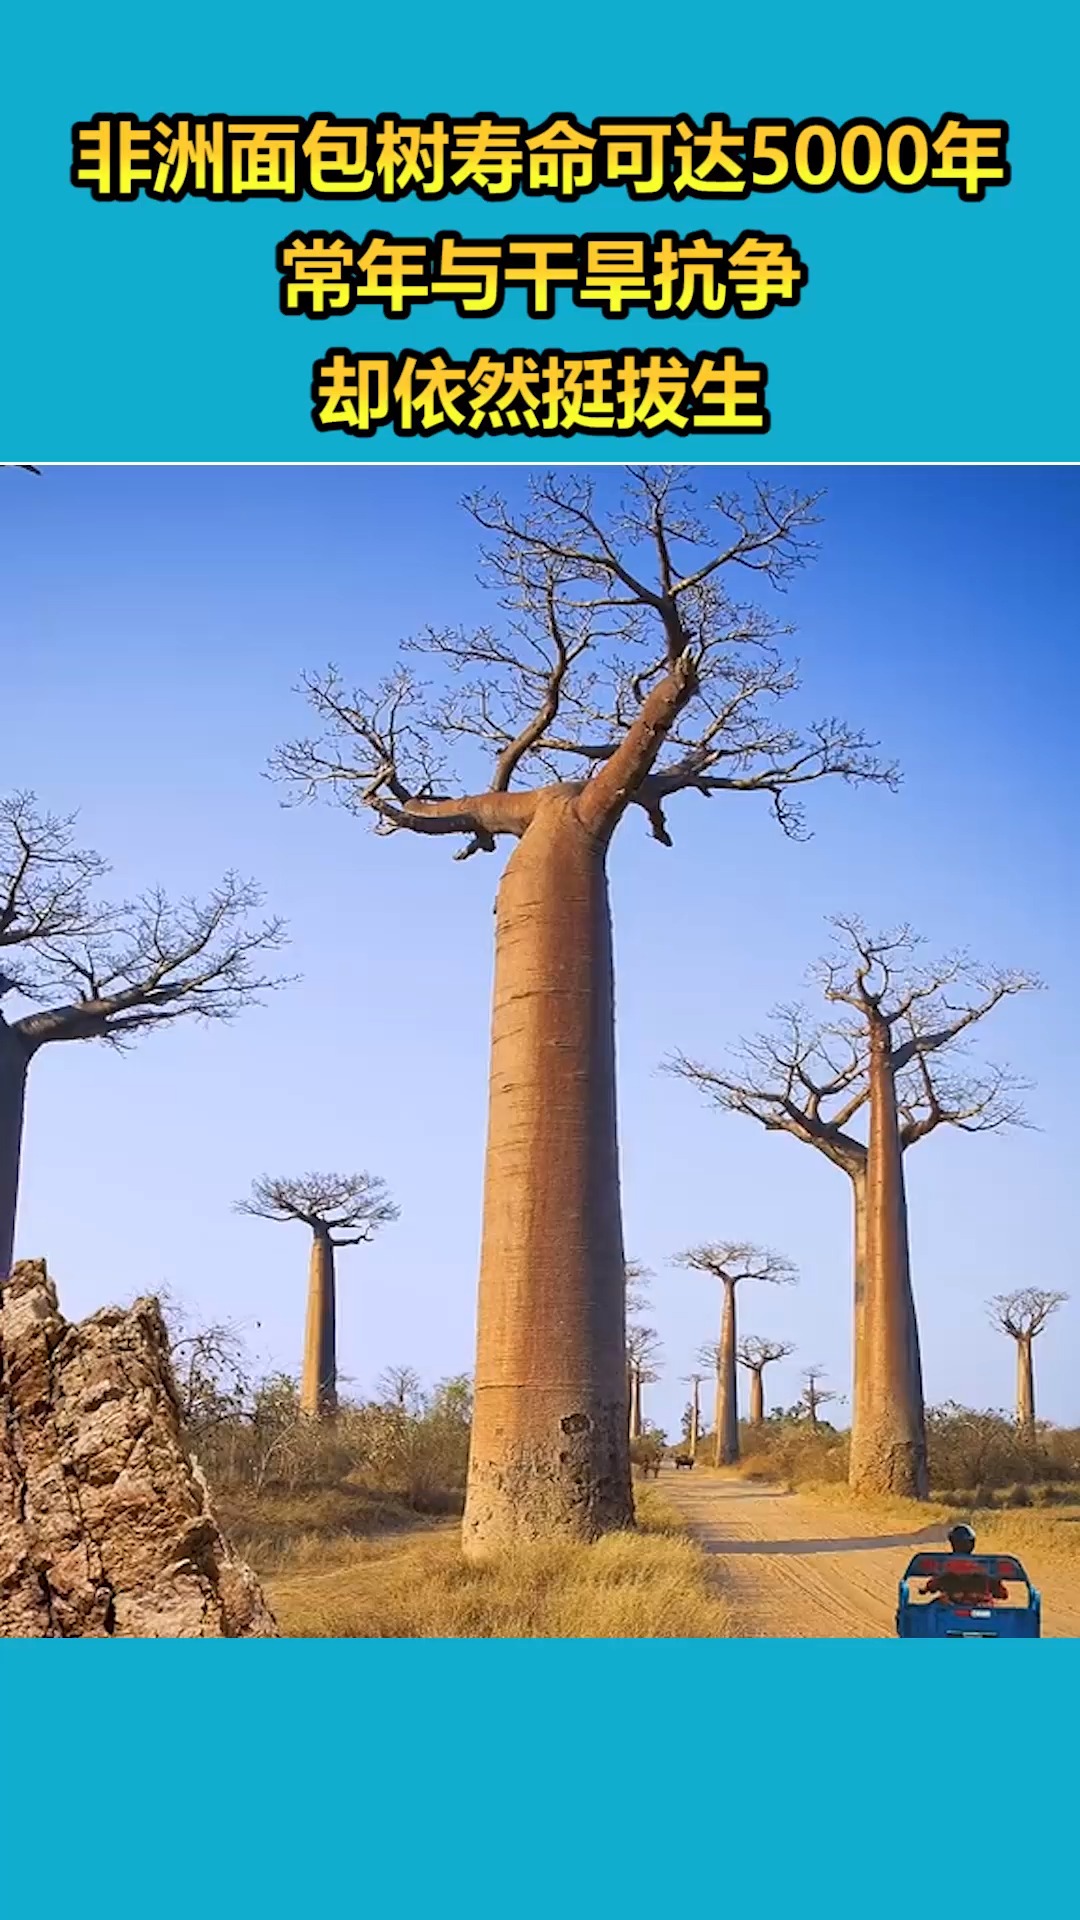 我要上热门#非洲面包树寿命可达5000年,常年与干旱抗争,却依然挺拔